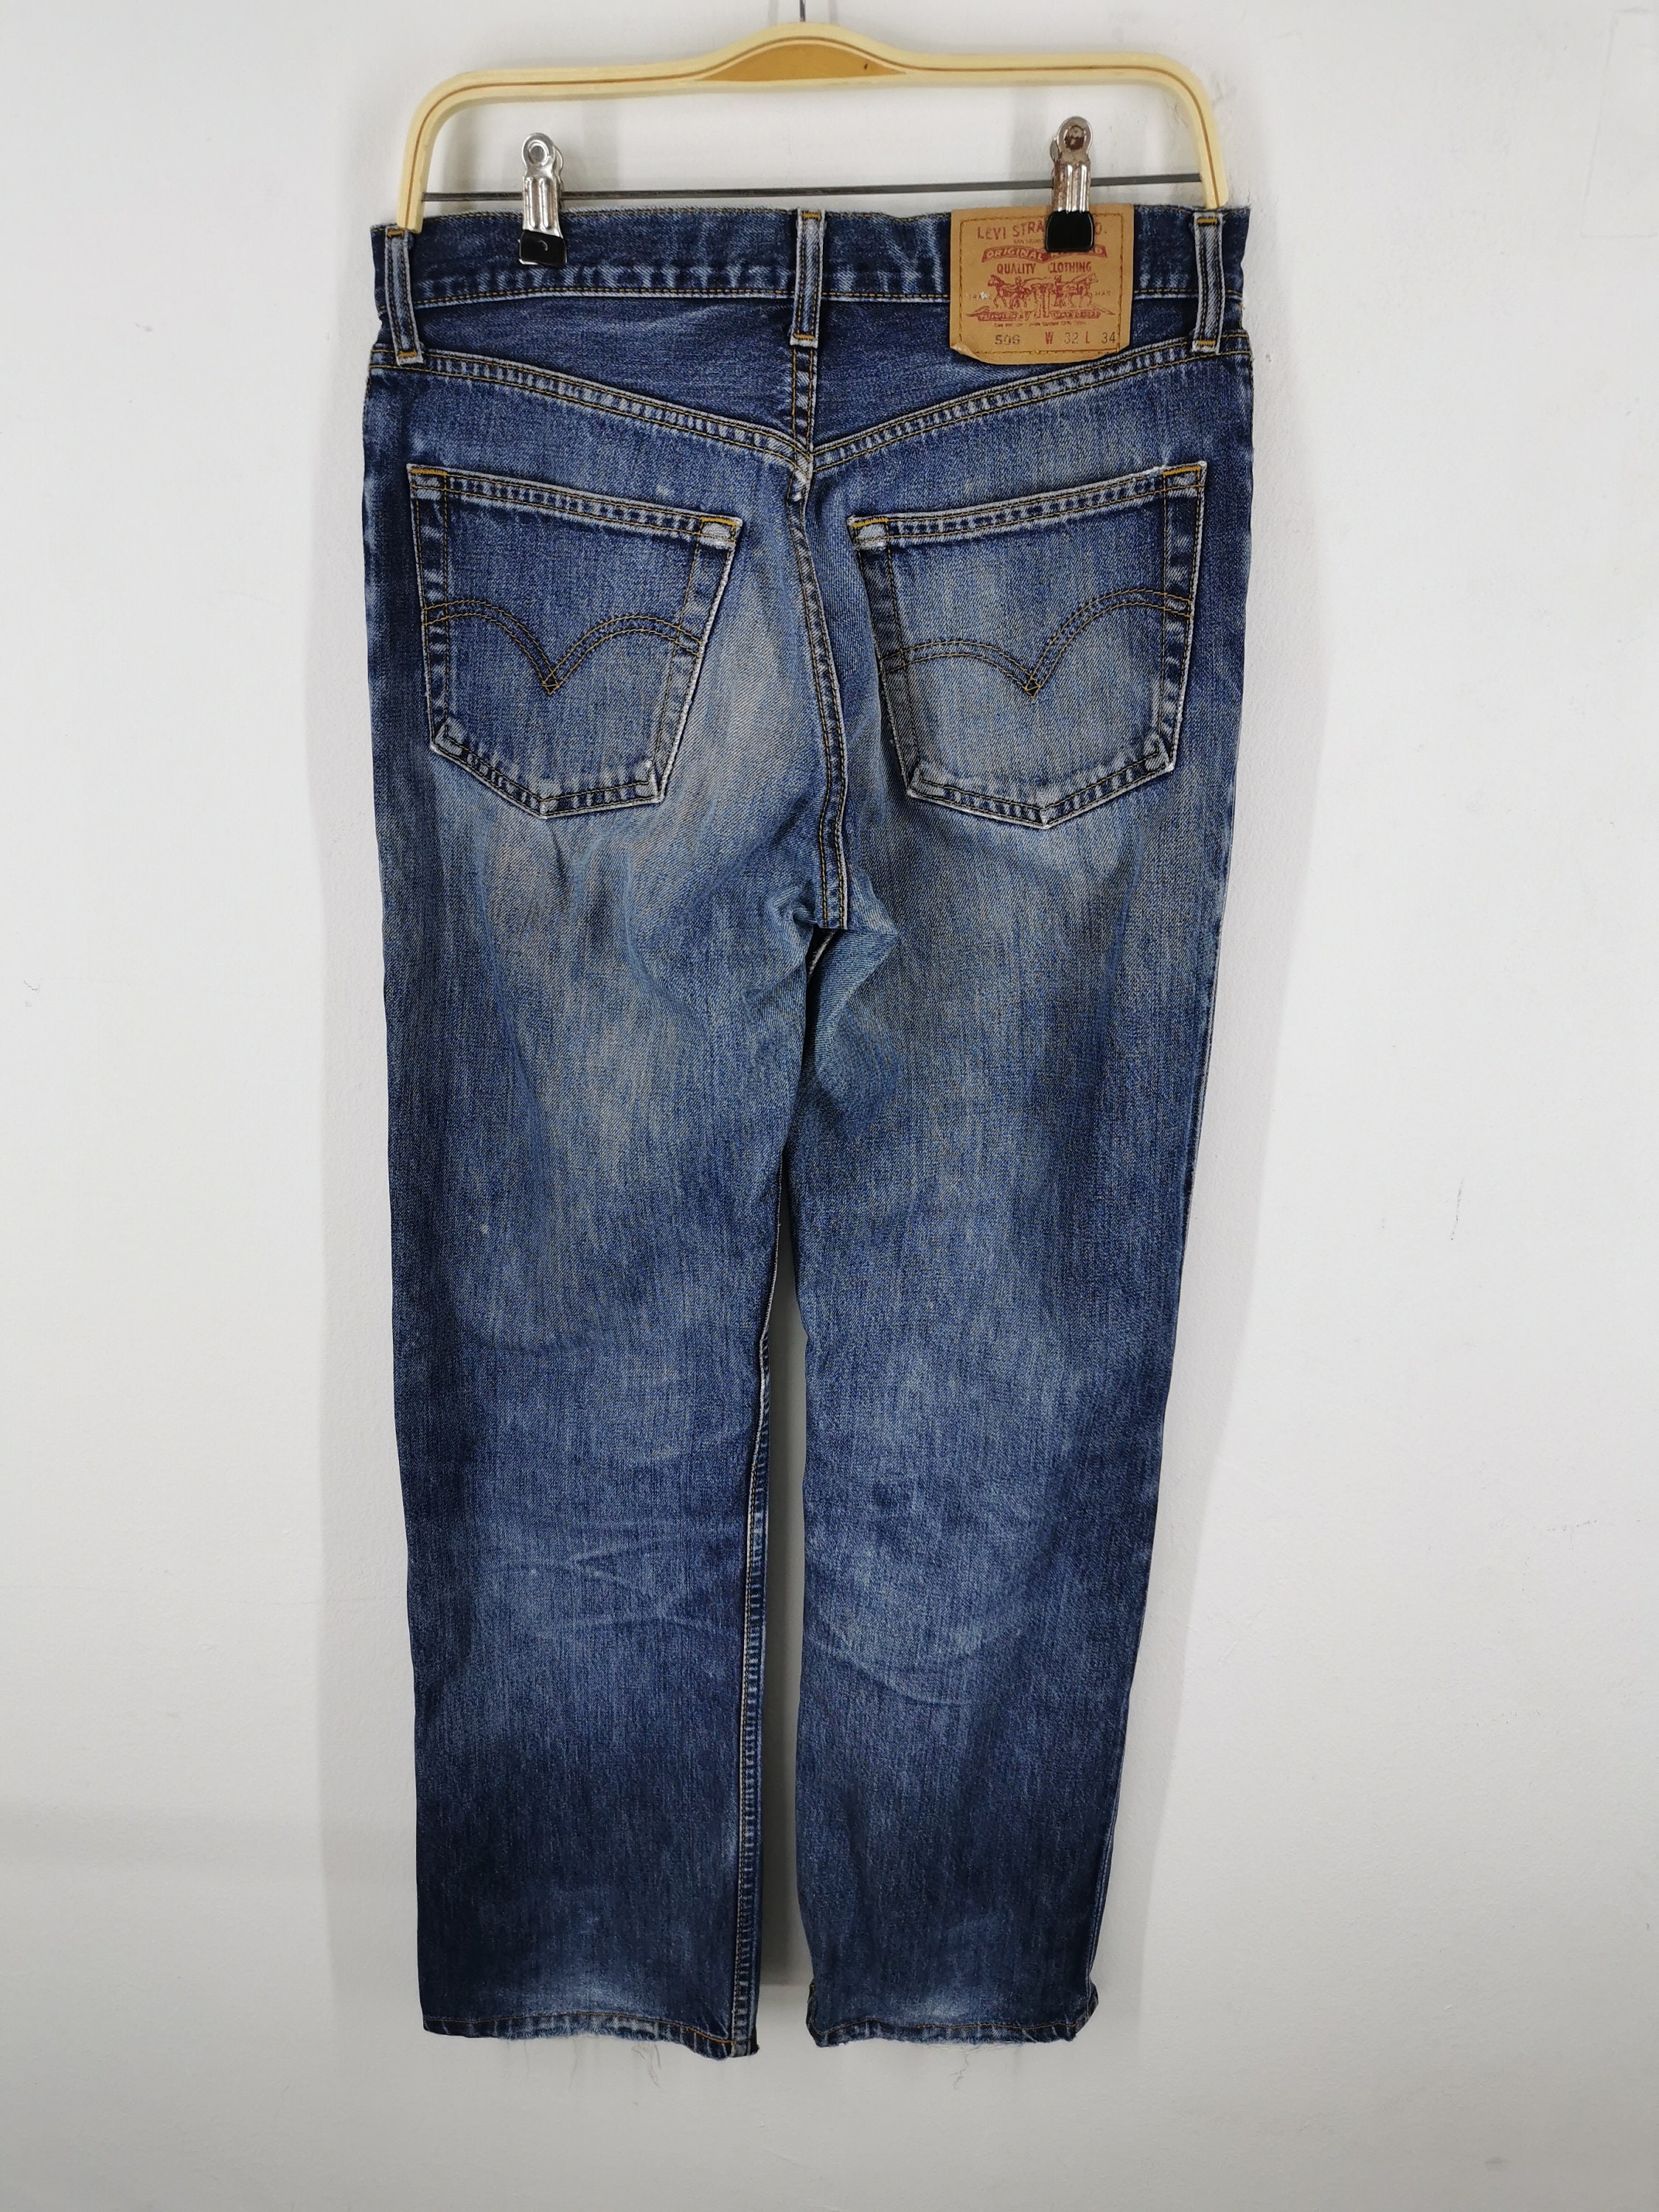 Levis 506 Jeans Distressed Vintage Size 32 Levis 506 Denim | Etsy